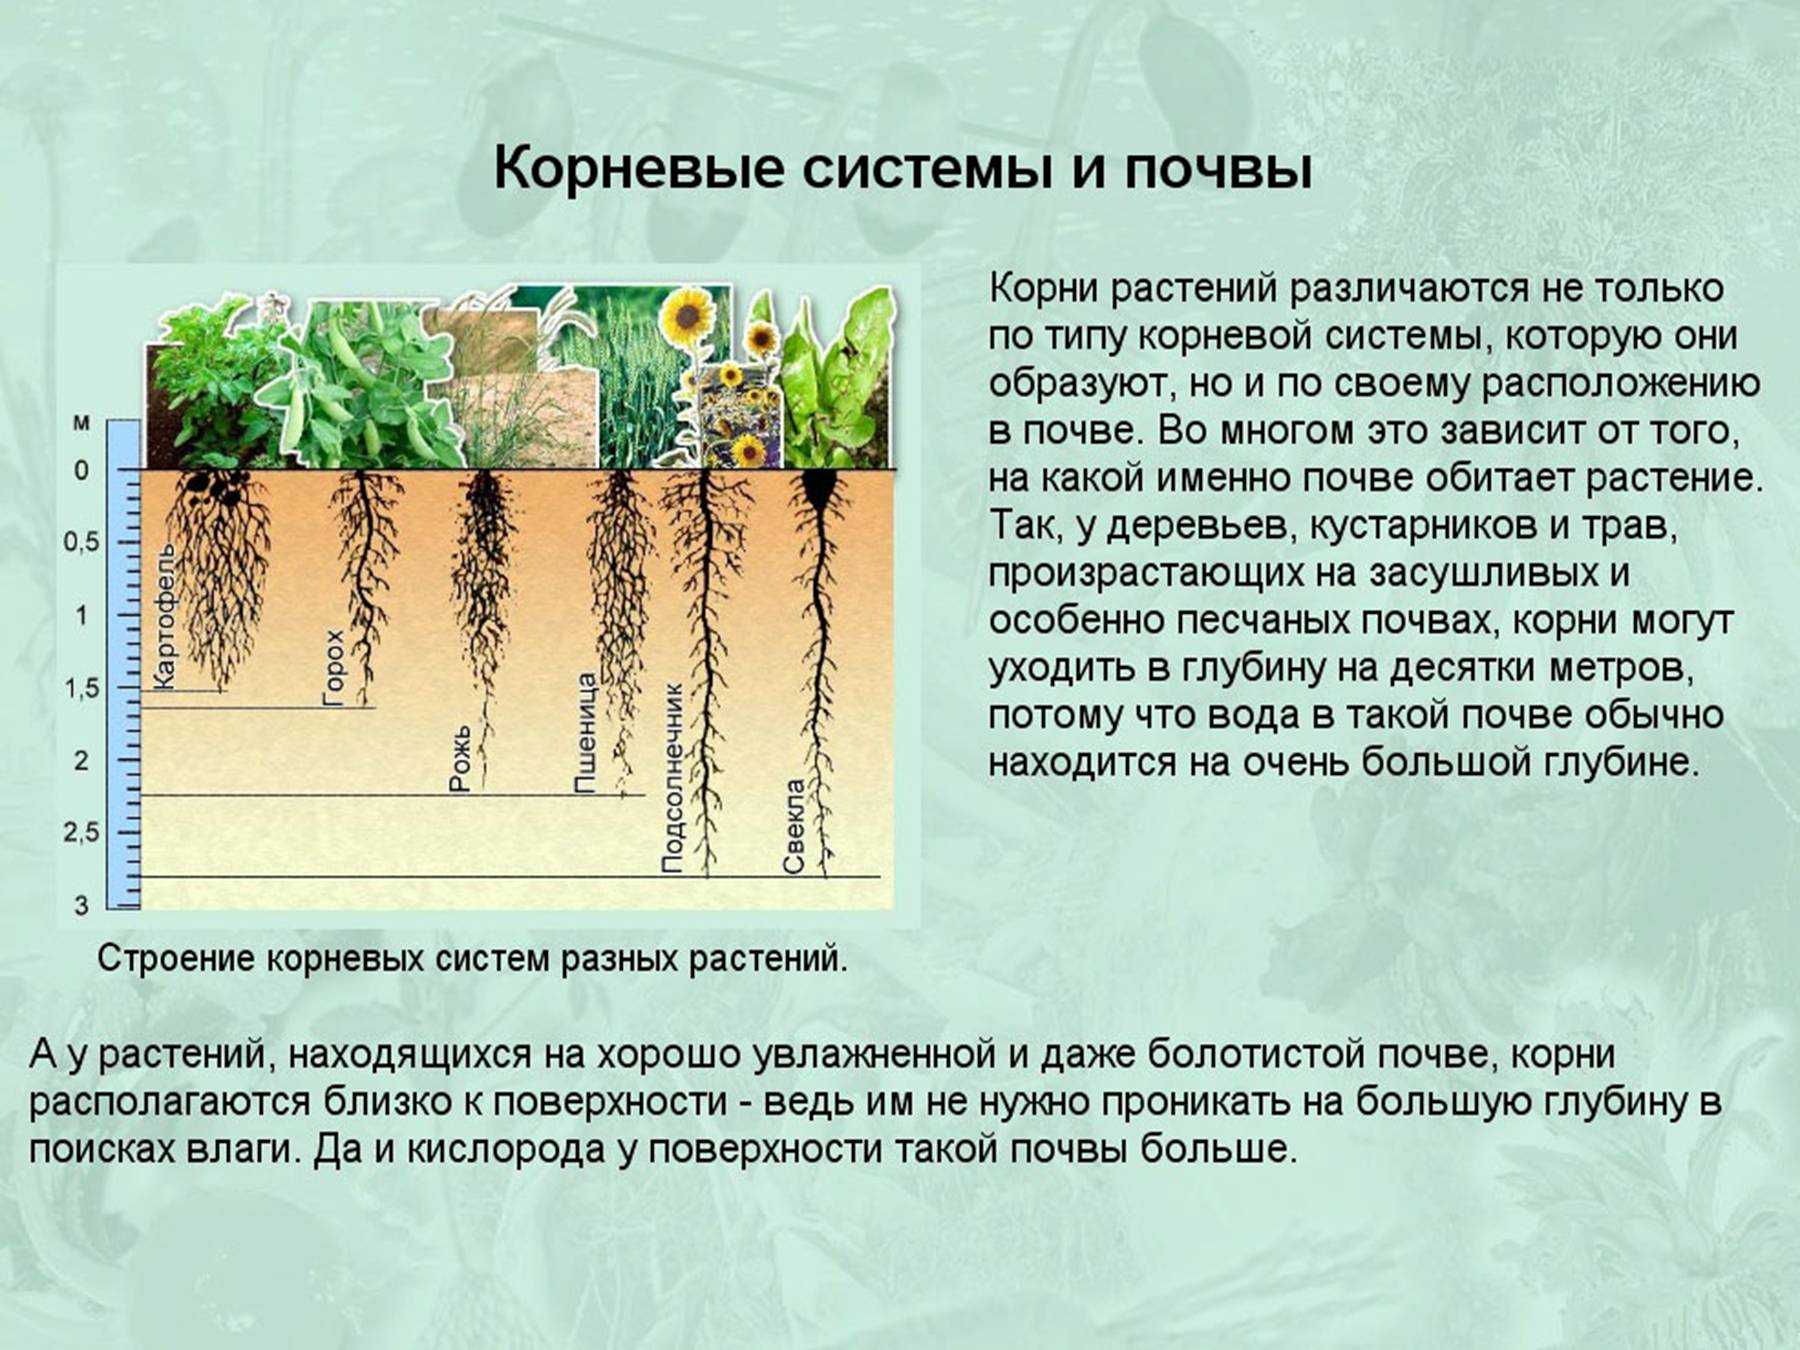 Скорость роста корня. Глубина корневой системы. Корень и корневая система. Растения с поверхностной корневой системой.